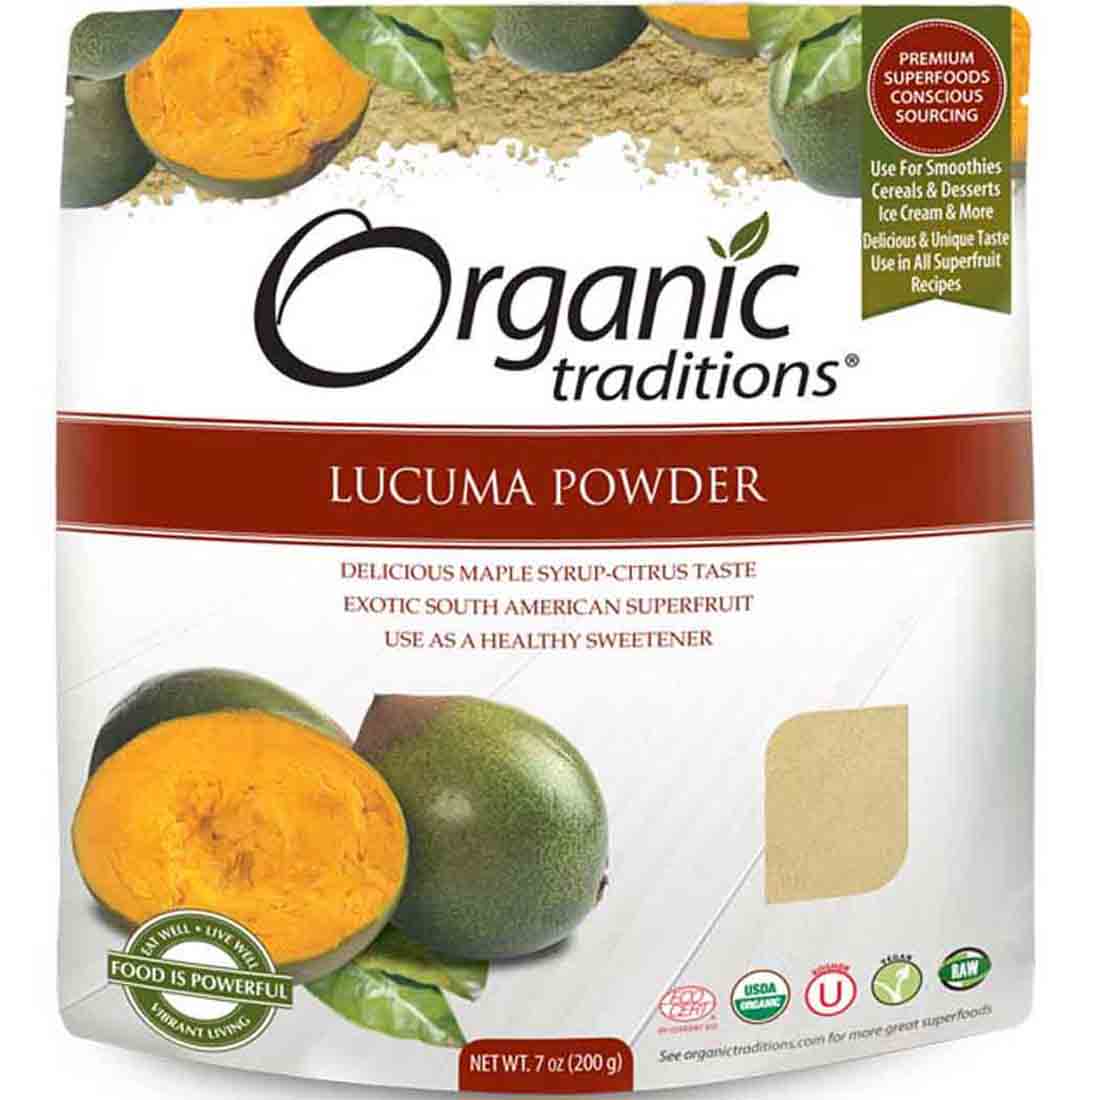 Organic Traditions Lucuma Powder, 200g